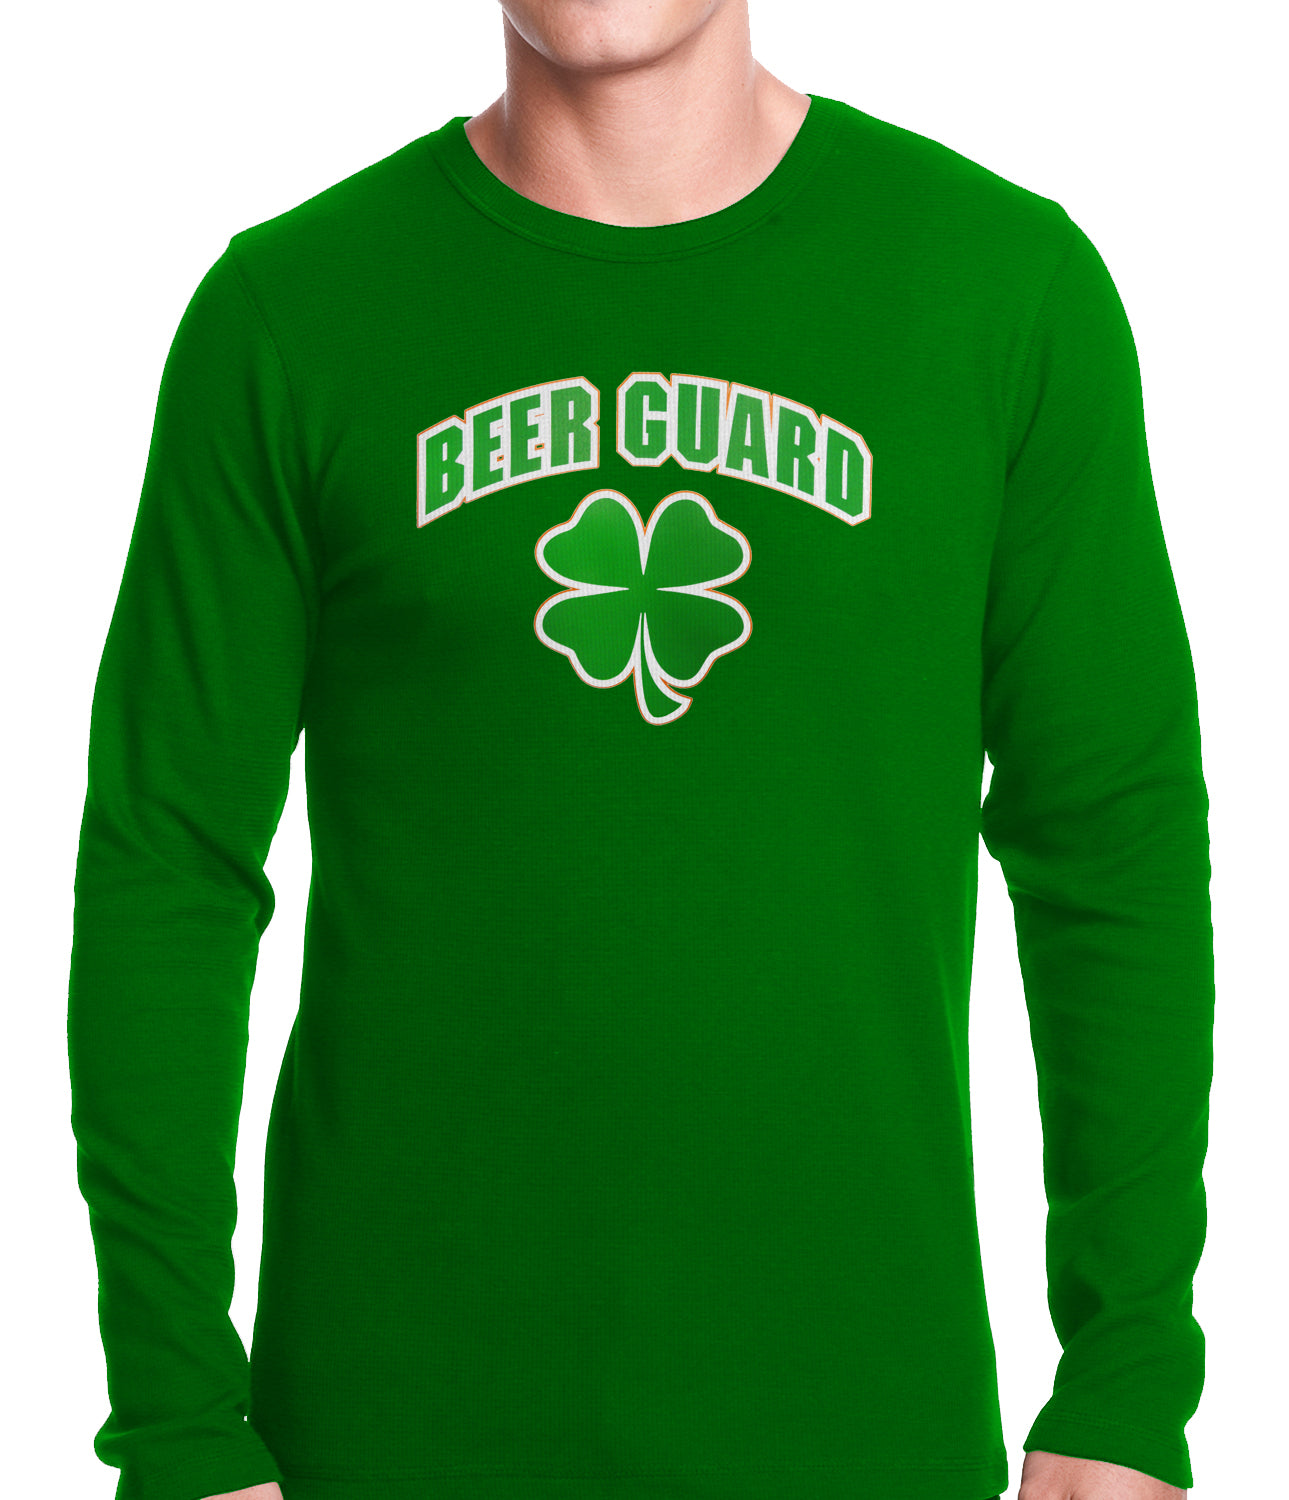 Beer Guard Irish Shamrock St. Patrick's Day Thermal Shirt Kelly Green